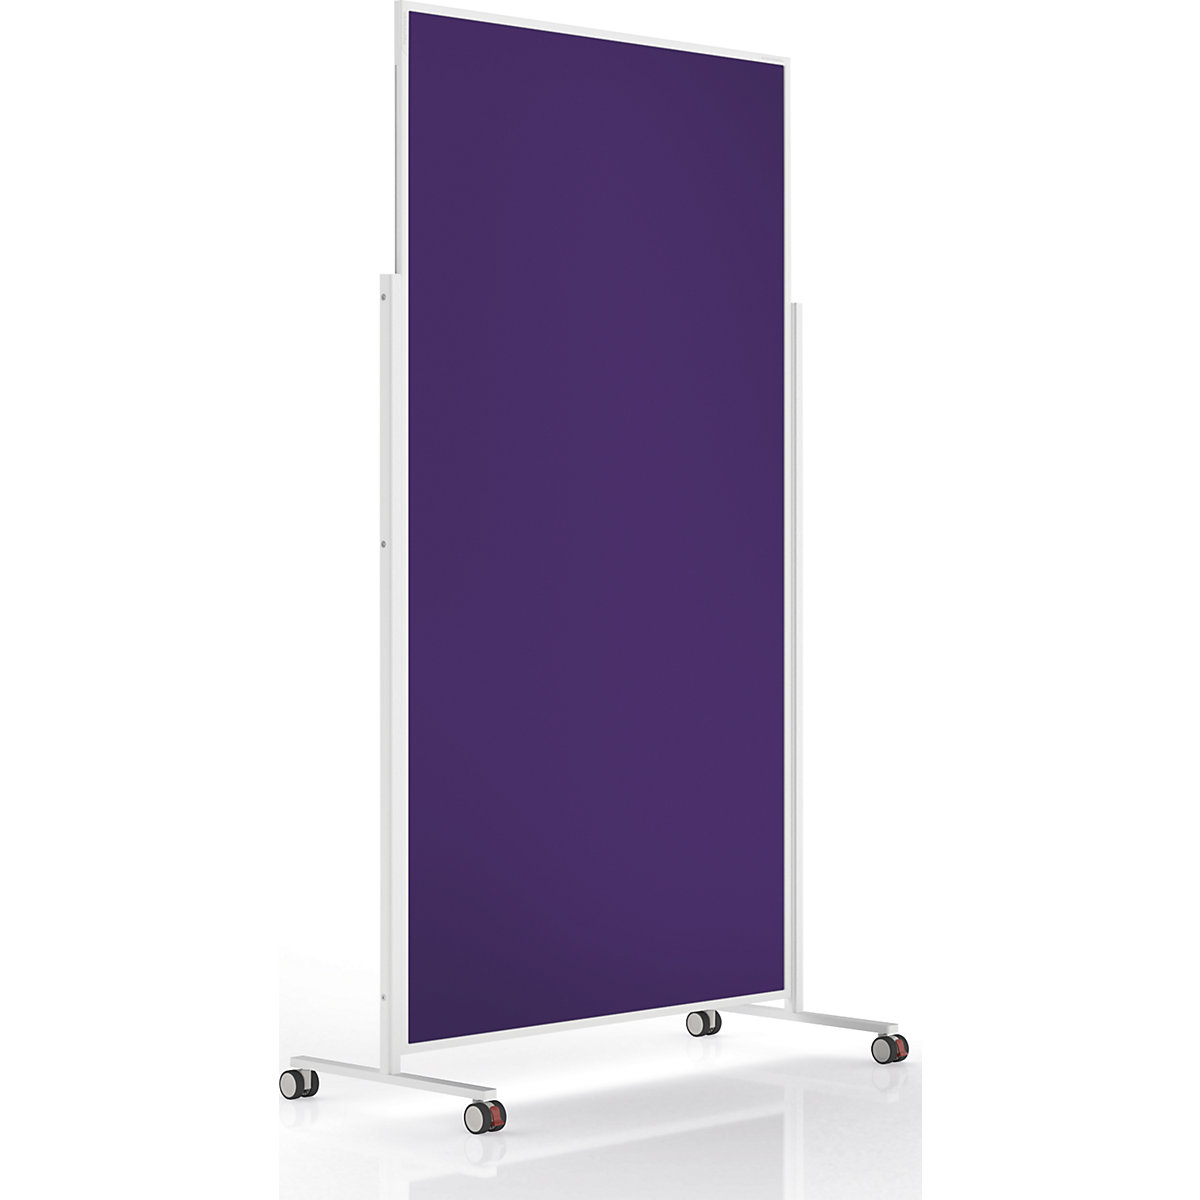 Design-Moderationstafel VarioPin magnetoplan, Tafelformat 1800 x 1000 mm, Filz, violett